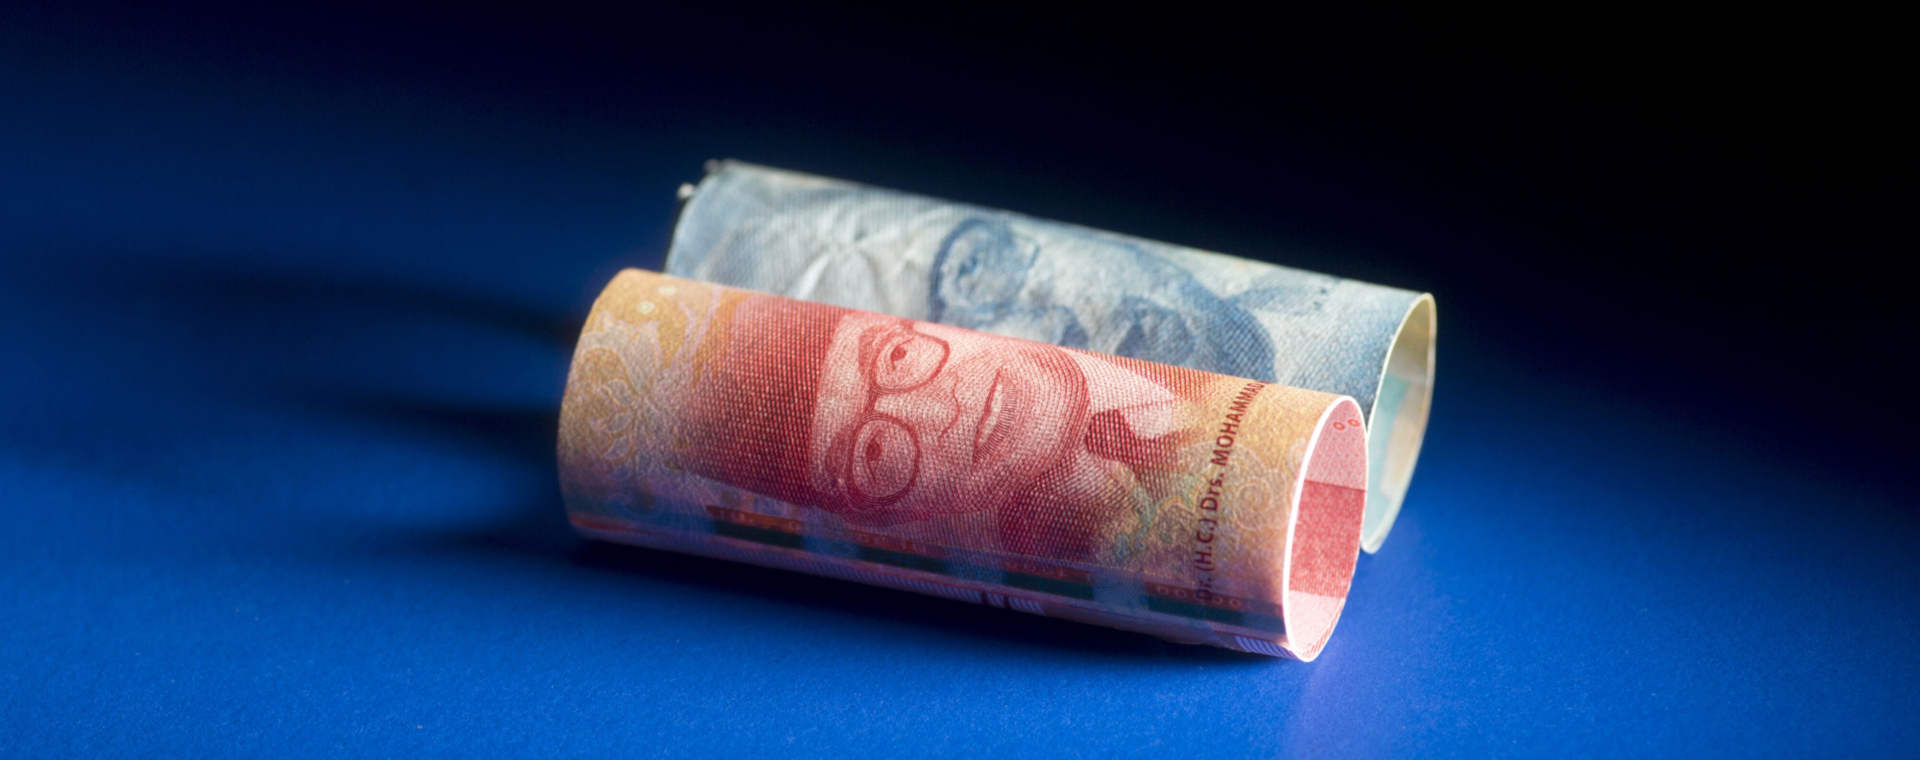 Potret uang pecahan Rp100.000 dan Rp50.000./Bloomberg-Brent Lewin.